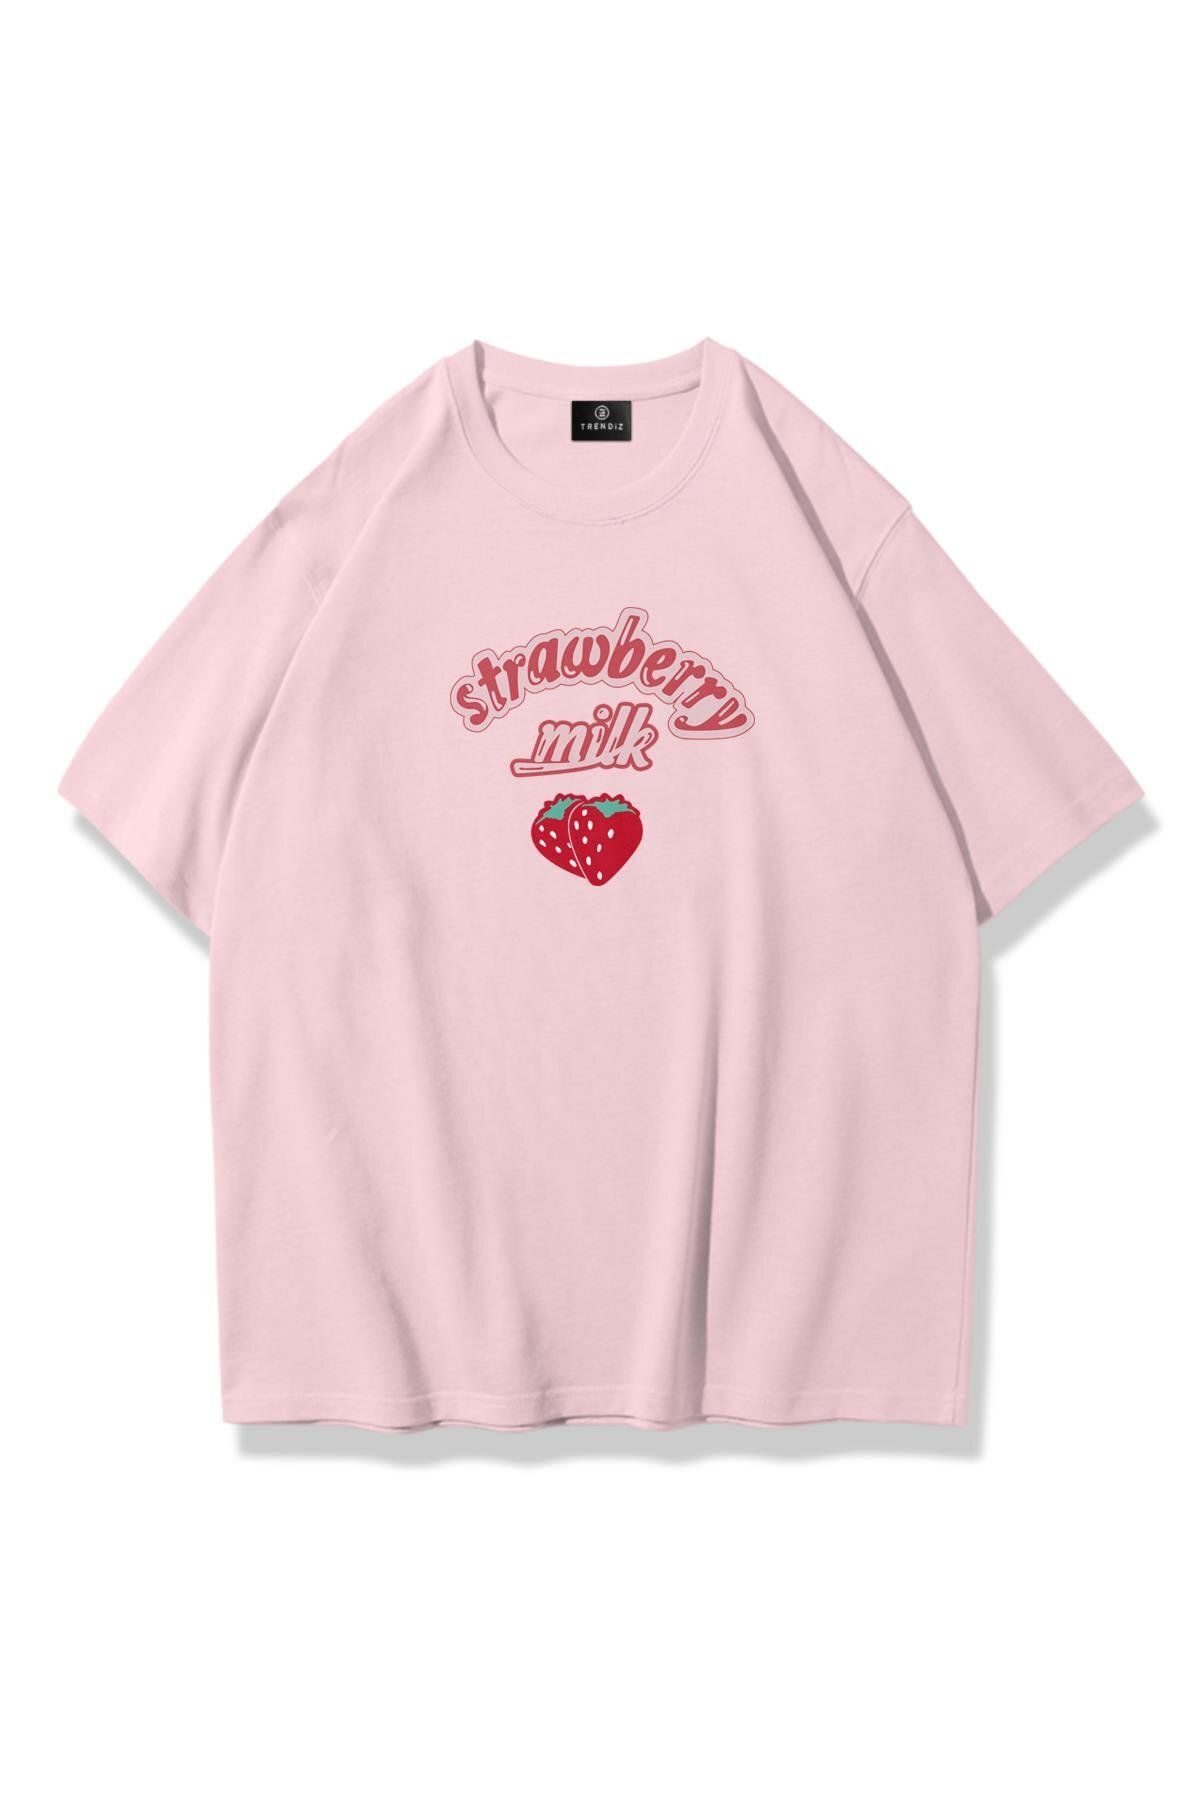 Trendiz Unisex Strawberry Milk Tshirt Pembe